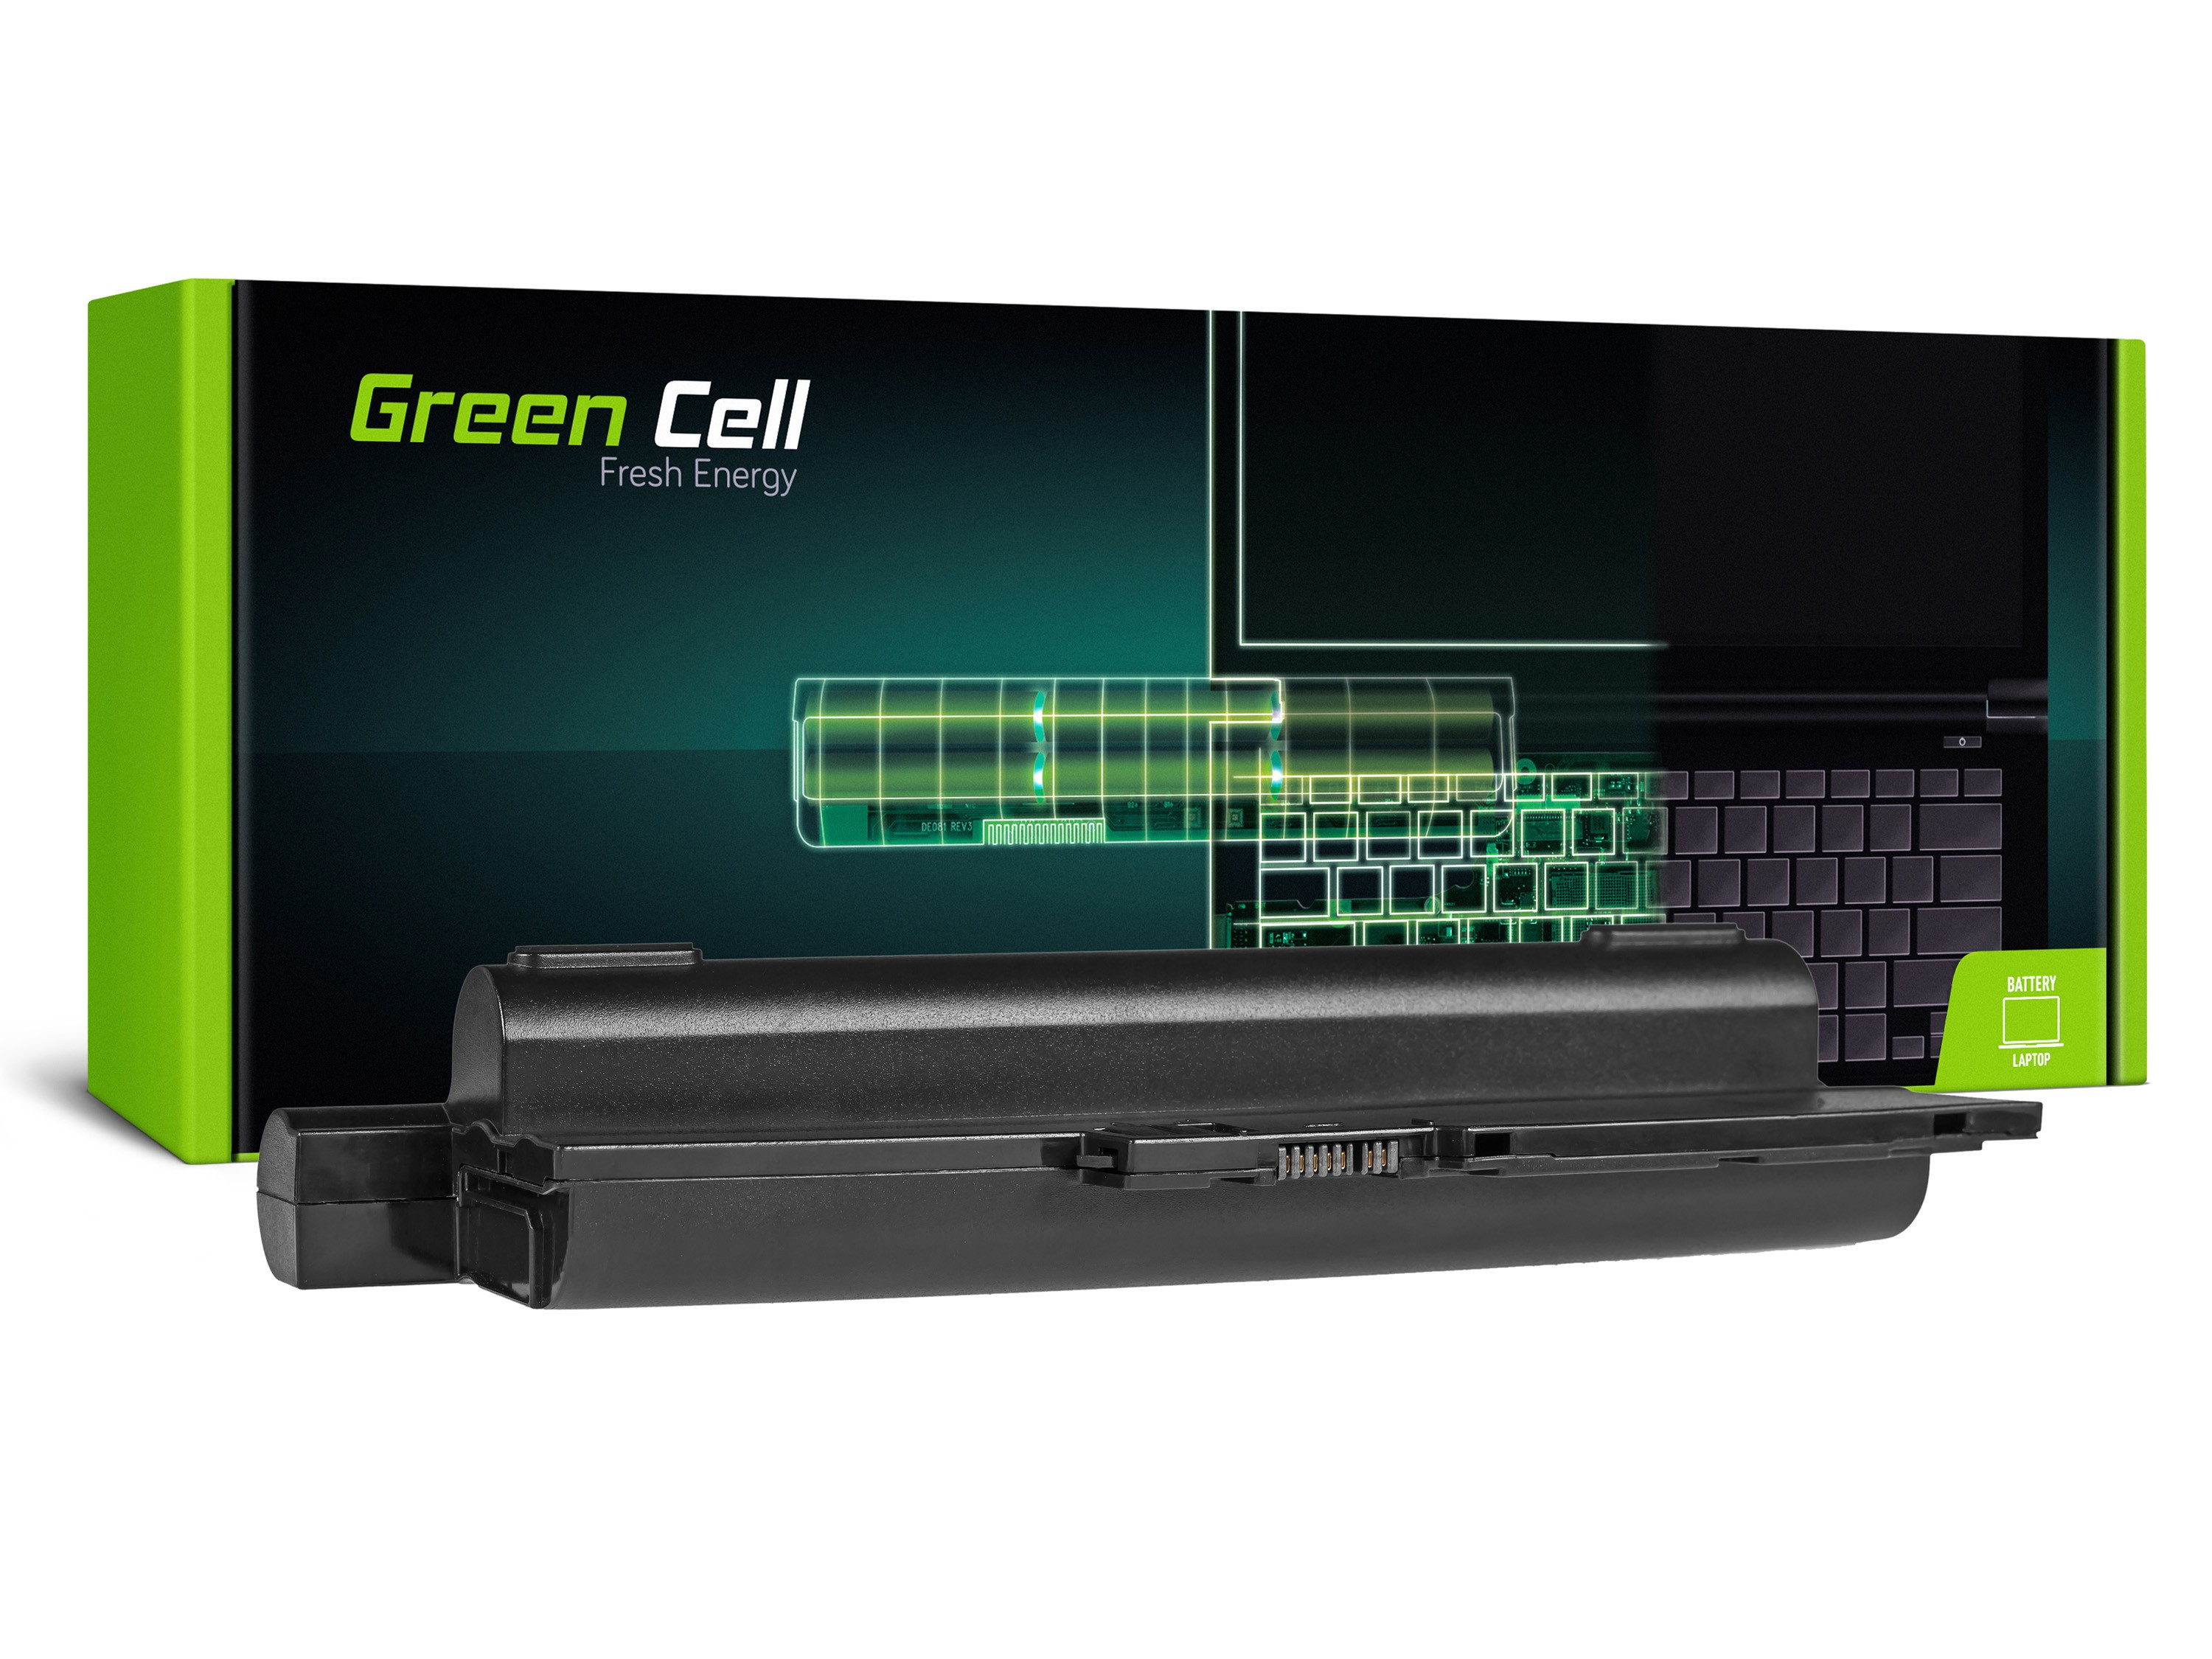 Green Cell Battery for Lenovo IBM ThinkPad T60 T60p T61 R60 R60e R60i R61 R61i T61p R500 SL500 W500